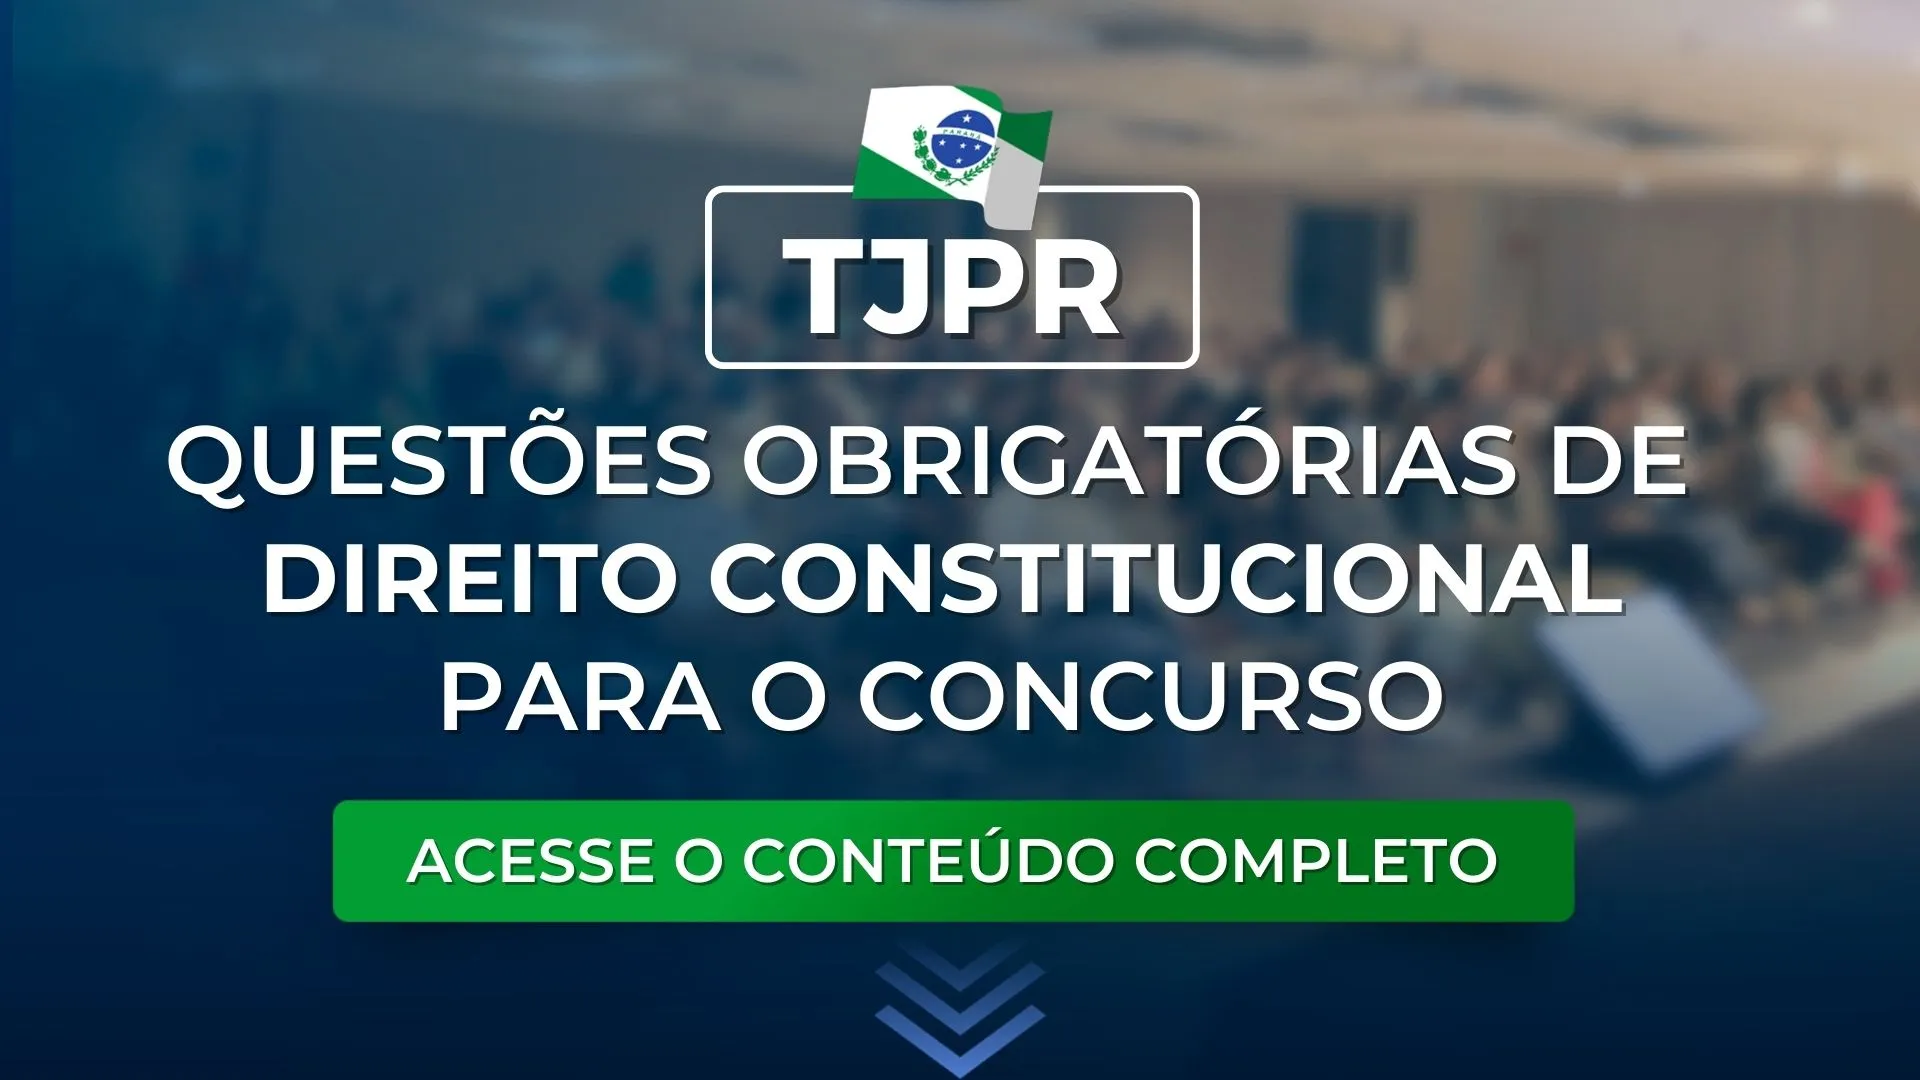 TJPR: Questões obrigatórias de Direito Constitucional para o concurso